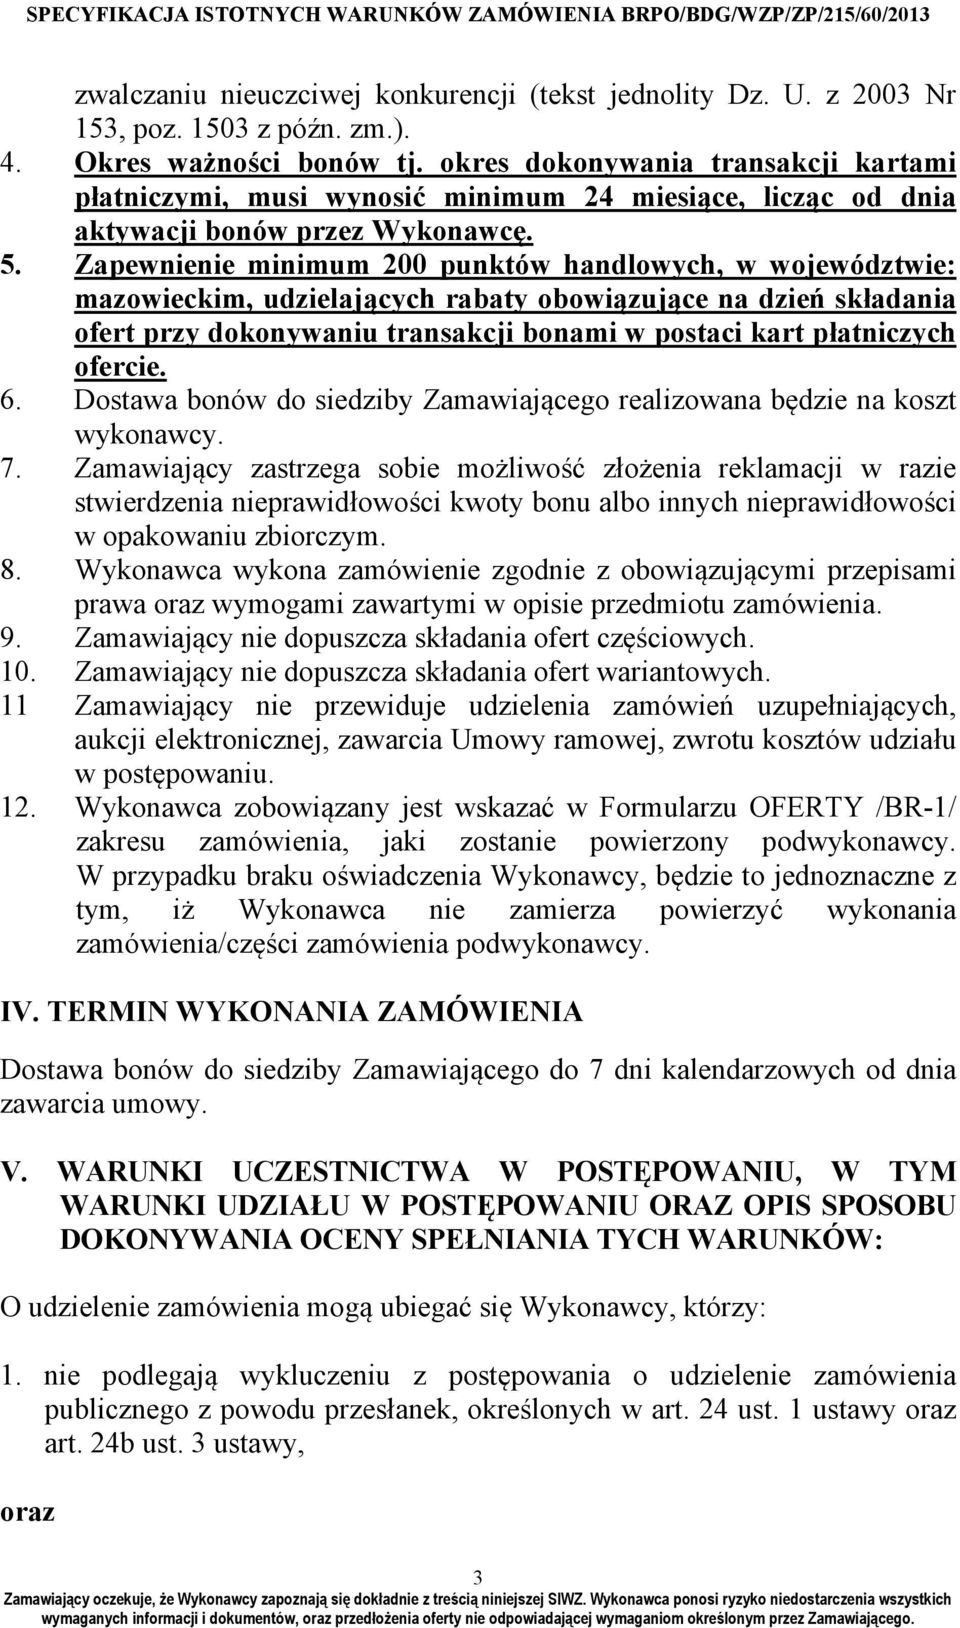 Zapewnienie minimum 200 punktów handlowych, w województwie: mazowieckim, udzielających rabaty obowiązujące na dzień składania ofert przy dokonywaniu transakcji bonami w postaci kart płatniczych